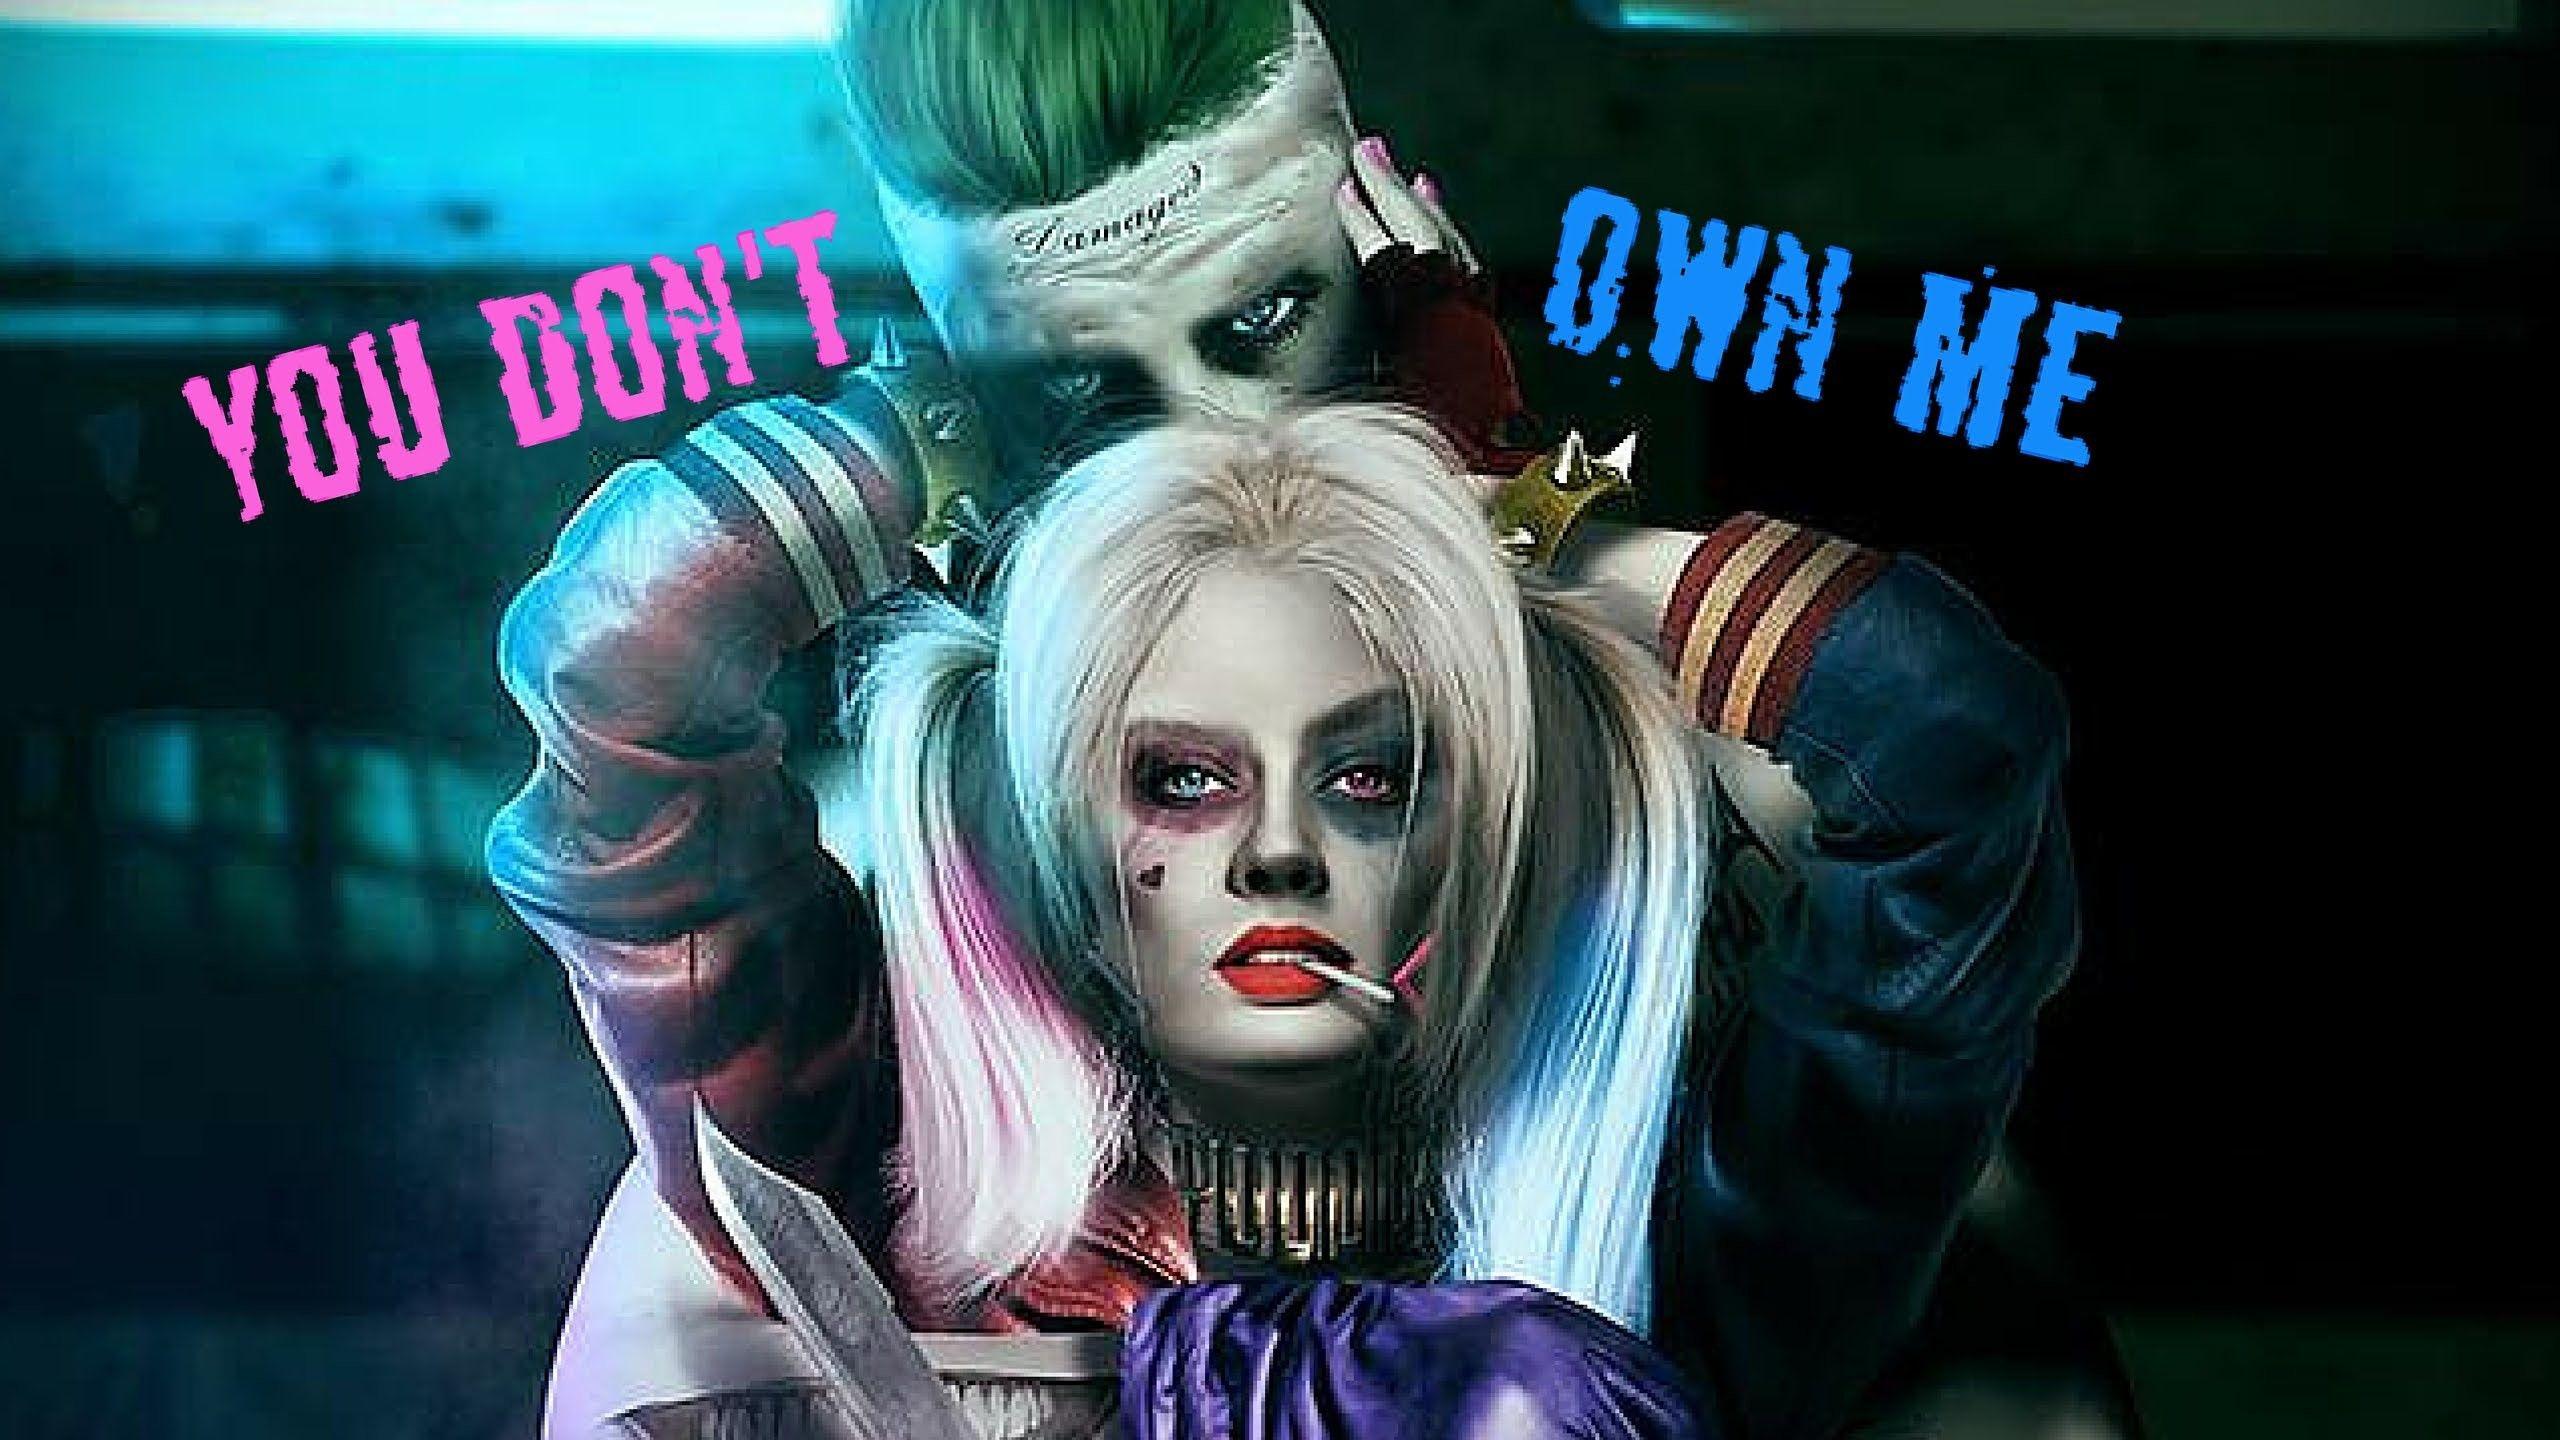 Joker and Harley Quinn Desktop Wallpaper Free Joker